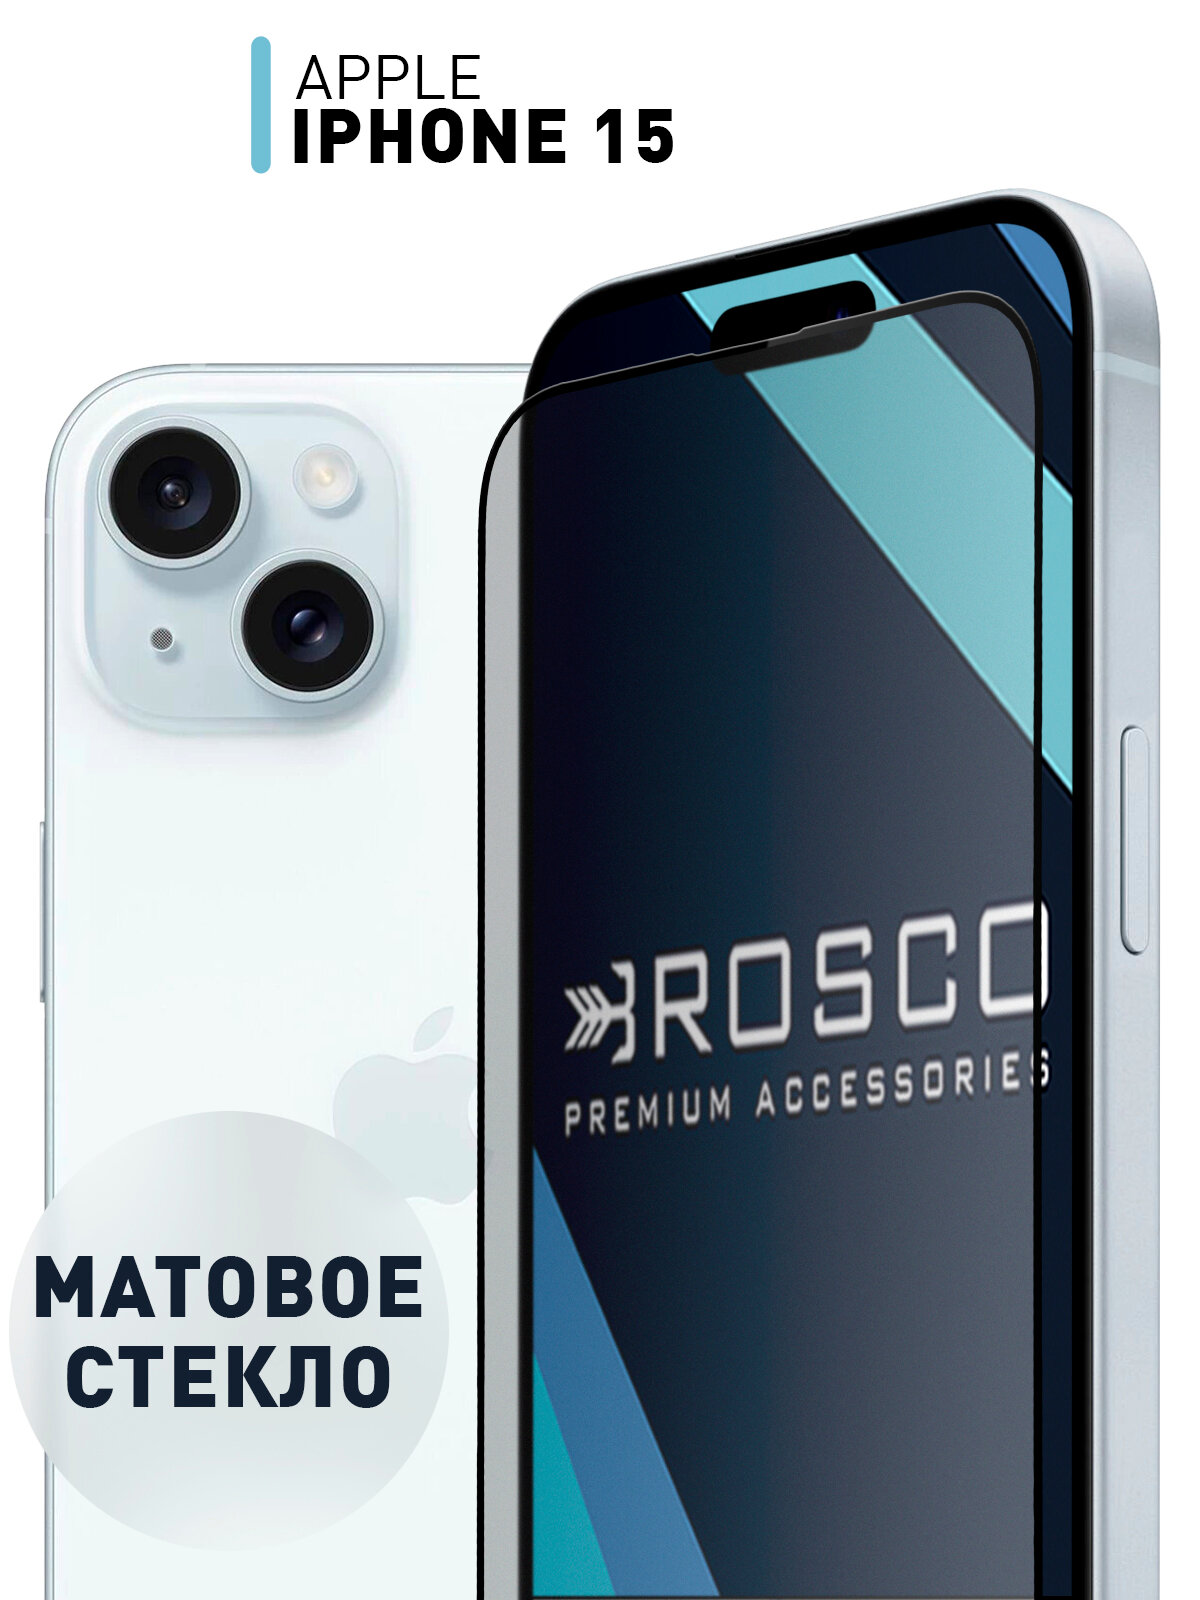 Защитное стекло ROSCO для Apple iPhone 15 (Эпл Айфон 15) матовое стекло, с олеофобным покрытием, прозрачное стекло, с черной рамкой